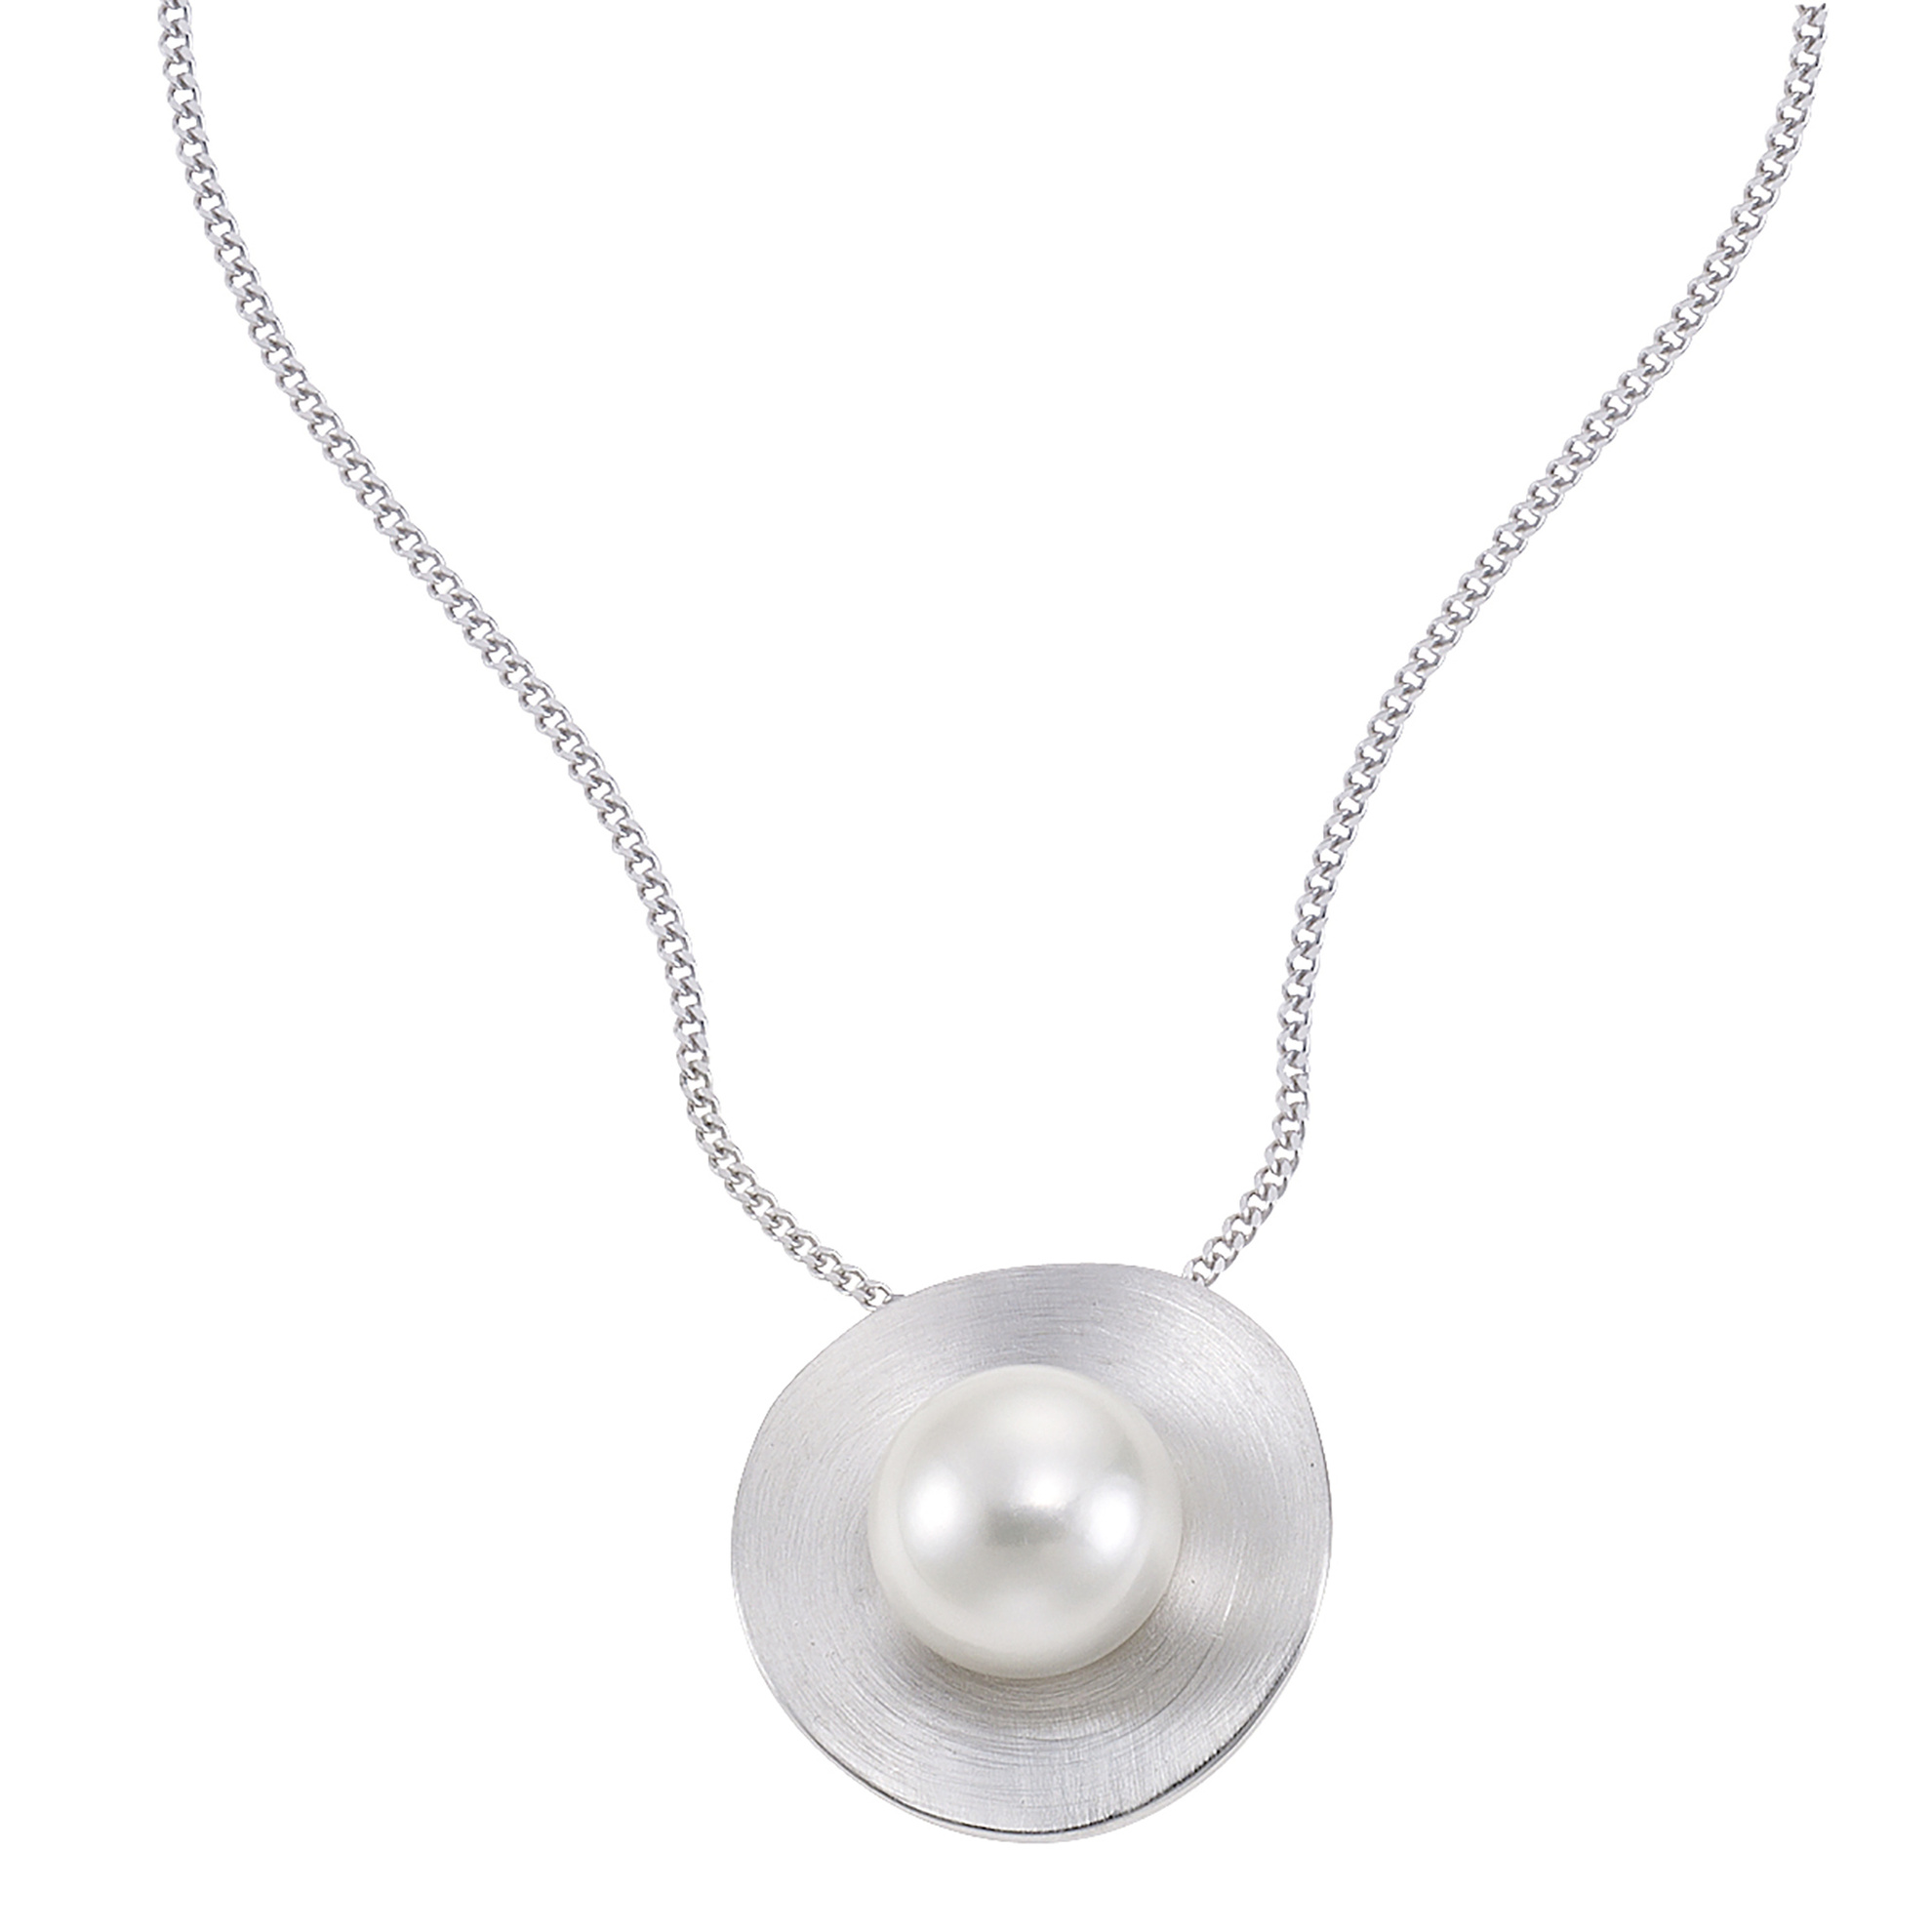 Zeeme Pearls Anhänger mit Kette 925 - Sterling Silber Perle weiß 45cm  gebürstet | Weltbild.de